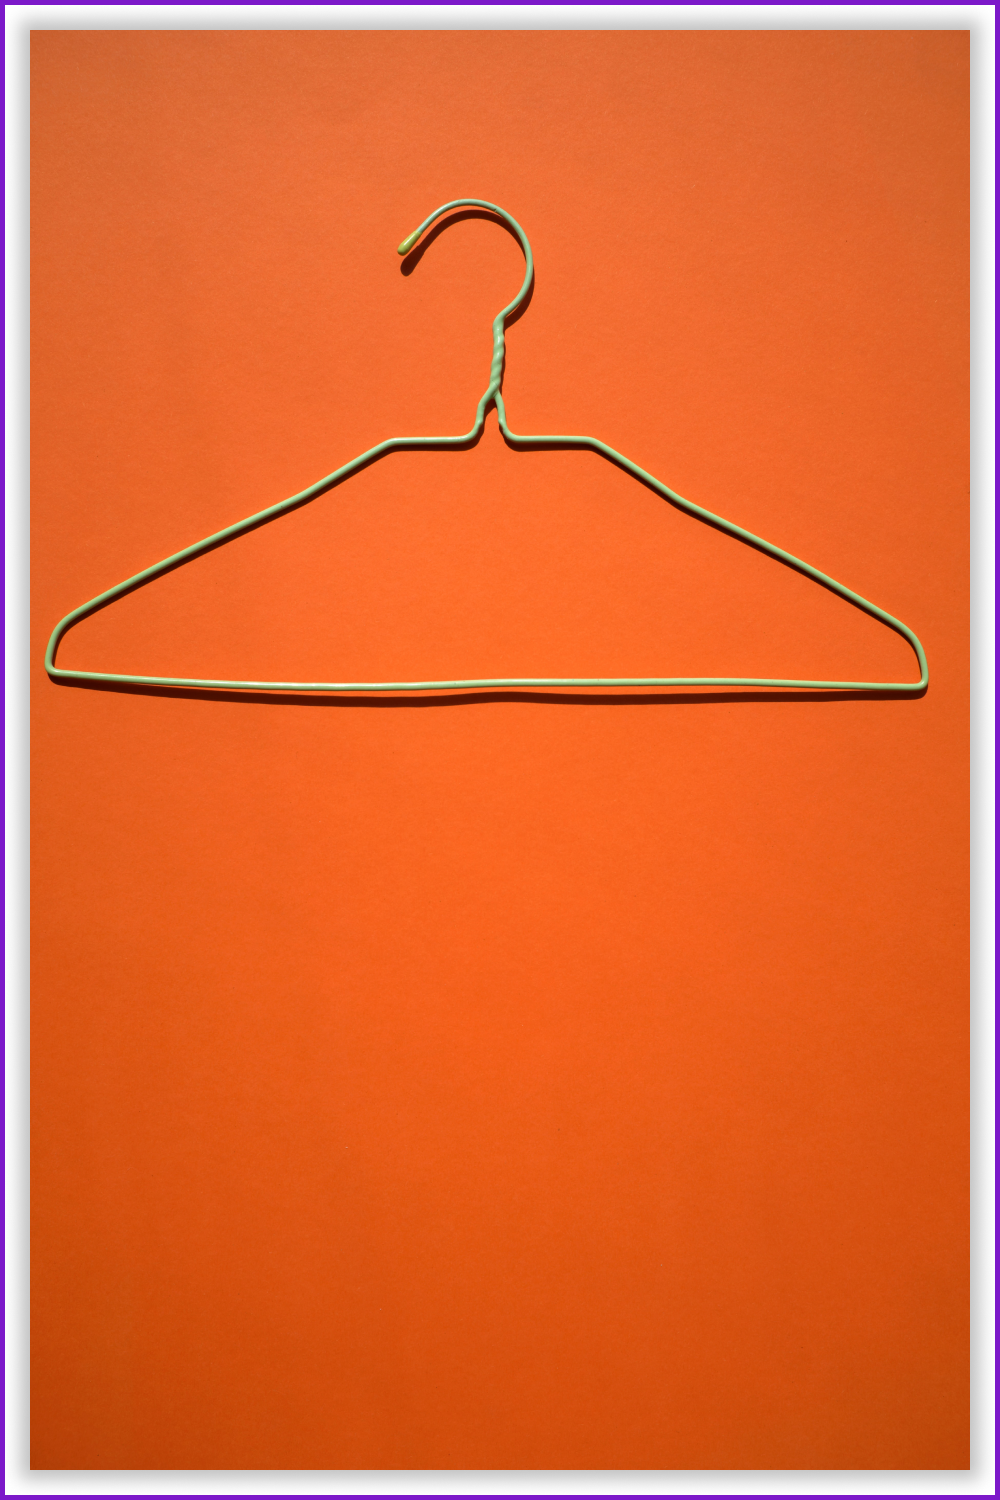 Used Hanger on the orange background.